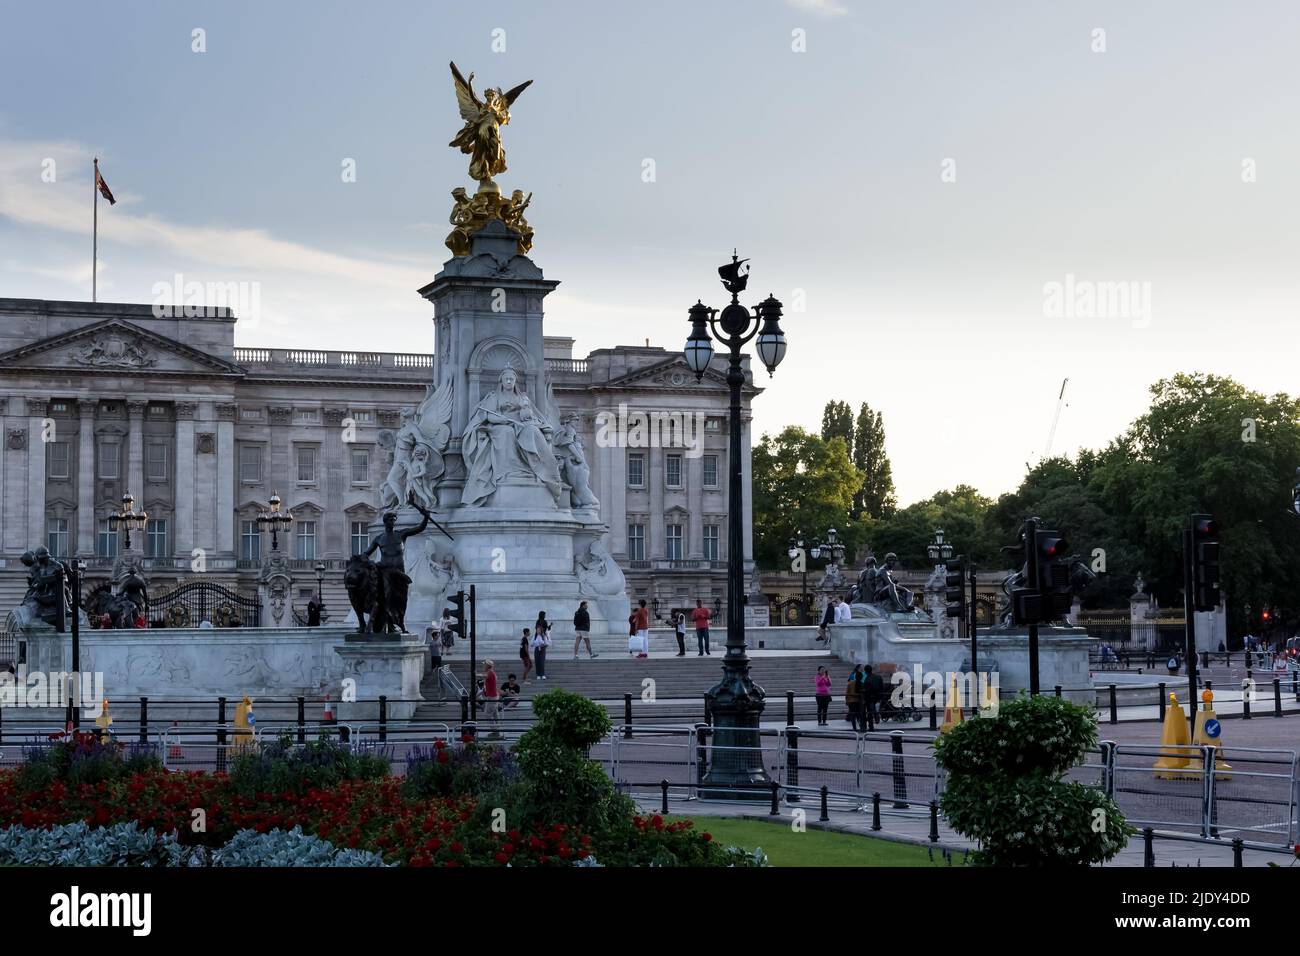 Detalle arquitectónico del Victoria Memorial, monumento a la Reina Victoria, ubicado al final del Mall. Al fondo, el Palacio de Buckingham Foto de stock